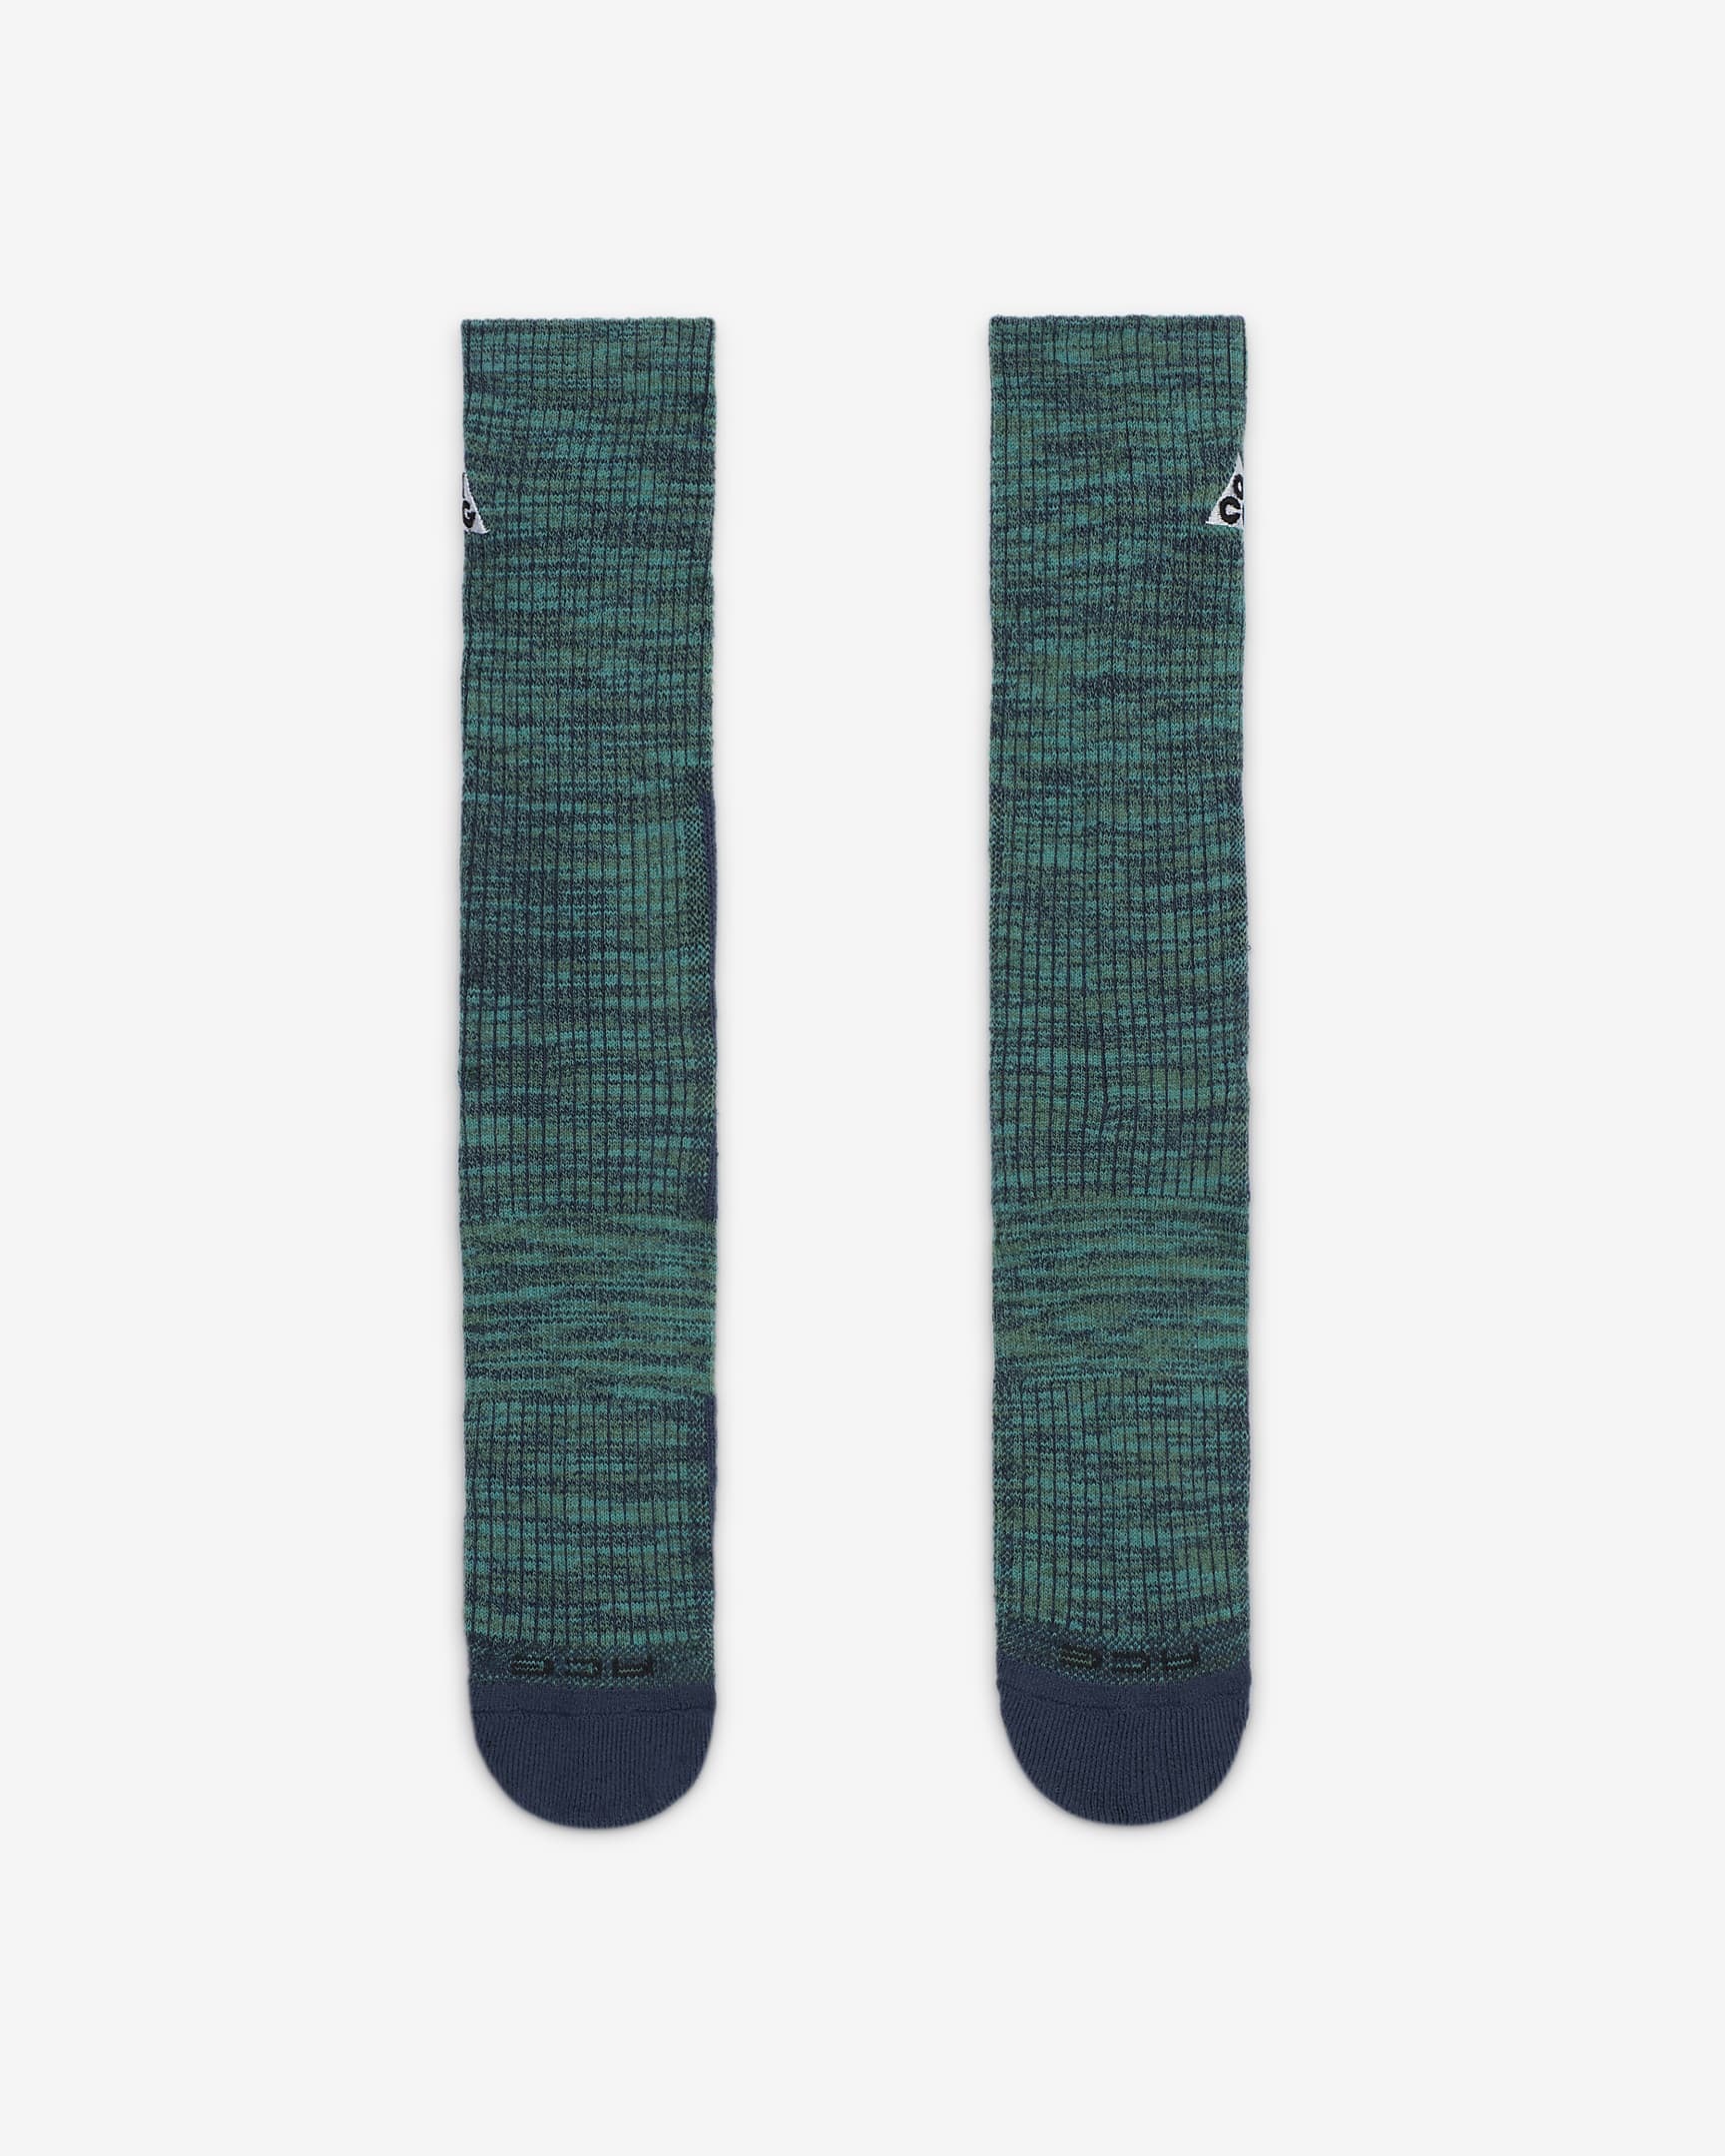 Nike ACG Everyday Cushioned Crew Socks (1 Pair) - Bicoastal/Thunder Blue/Dusty Cactus/White